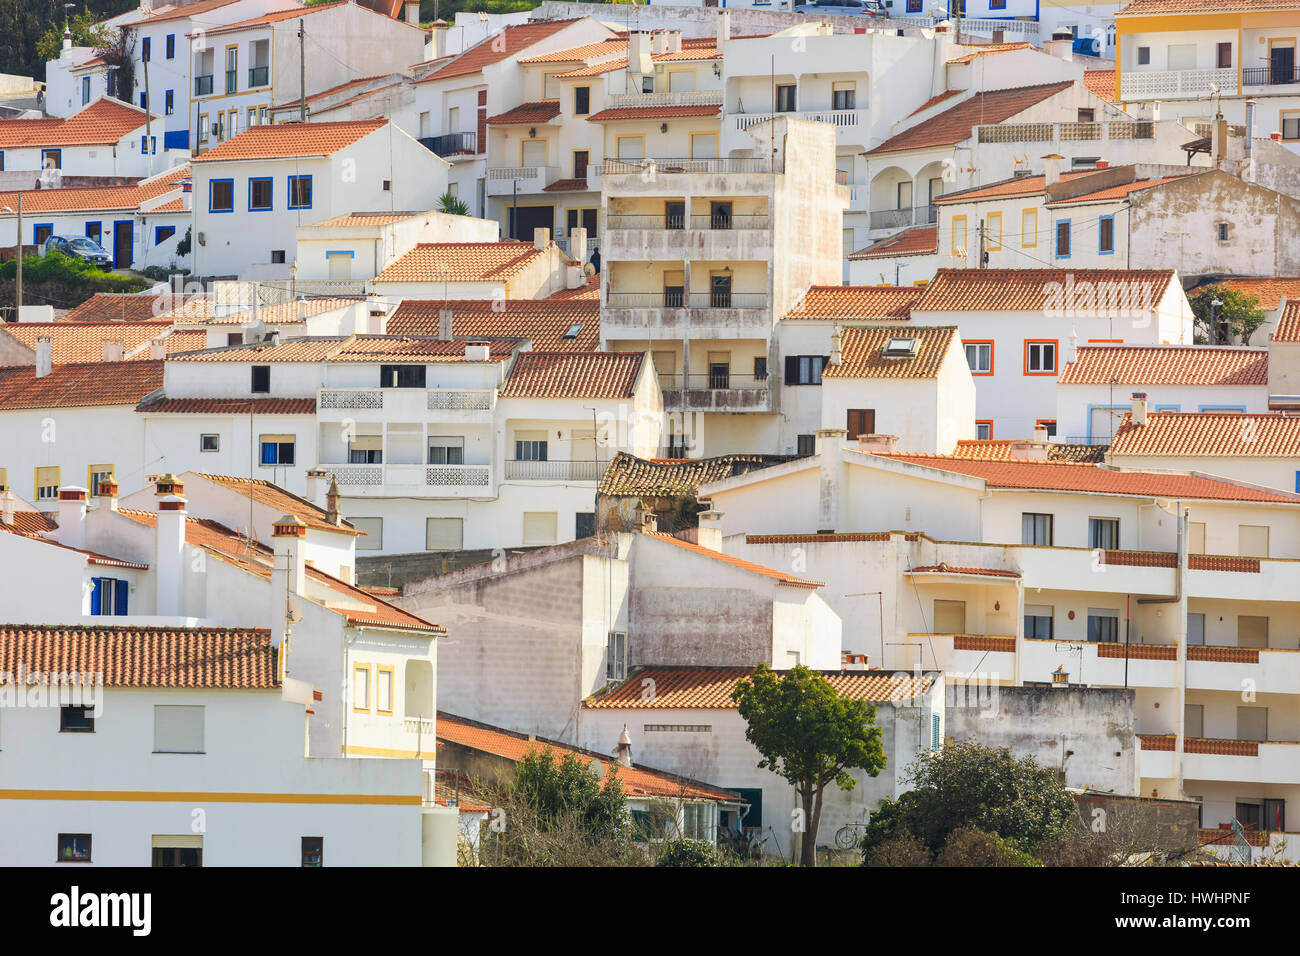 Odeceixe, Algarve, Portugal, ein kleines Dorf an der Atlantikküste und Bestandteil der Rota Vicentina. Stockfoto